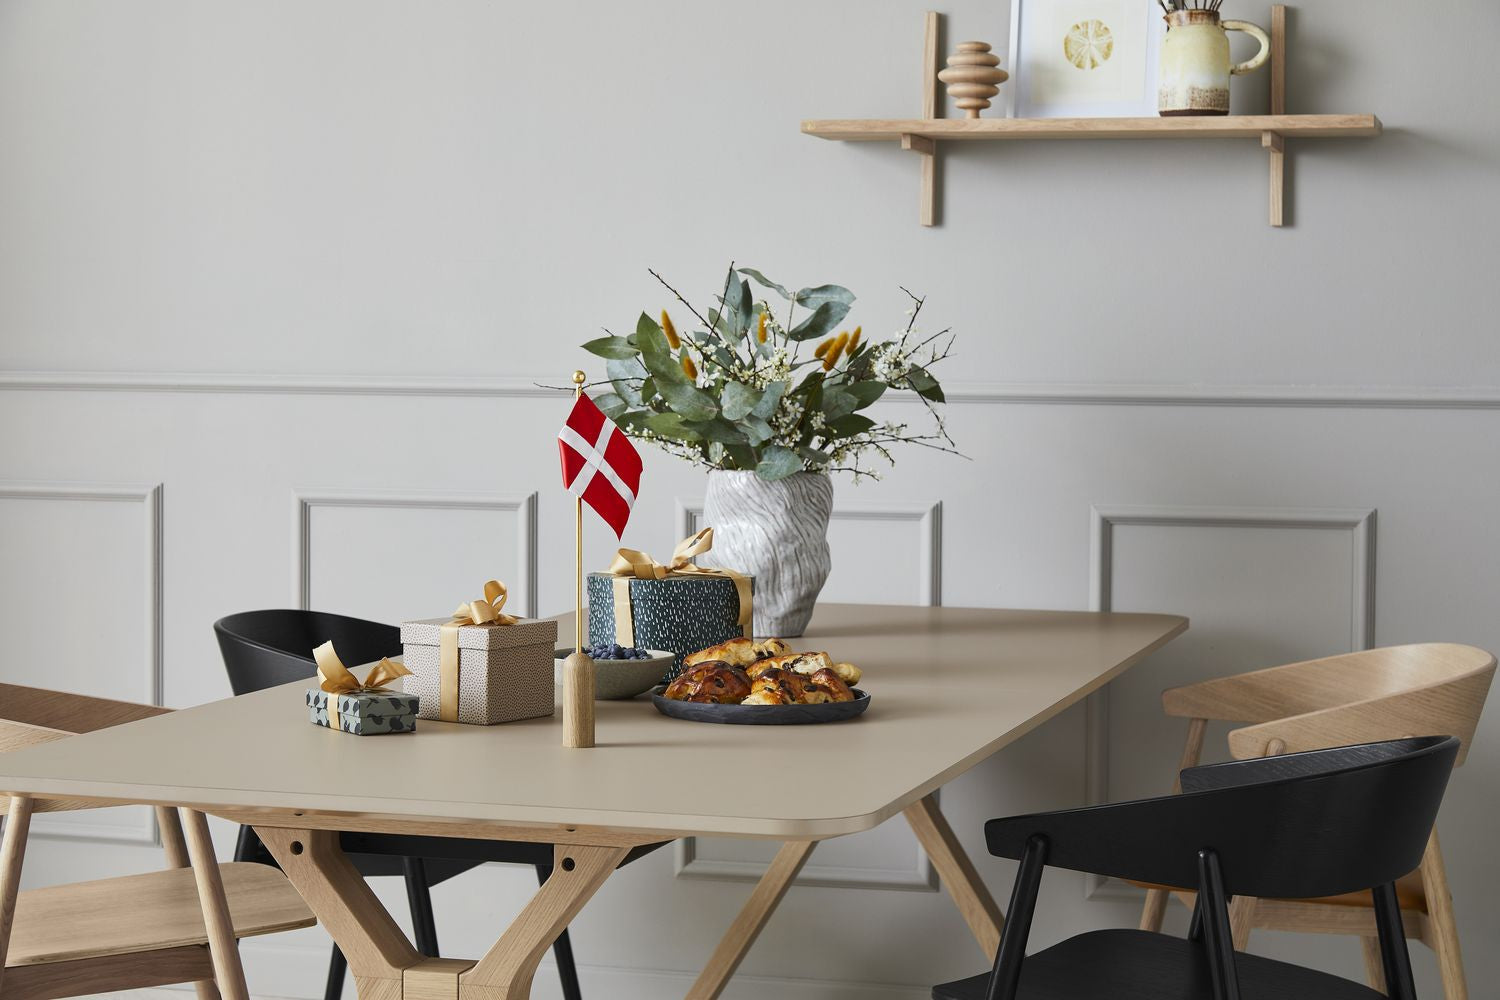 Andersen Furniture Feiern Sie dänische Flagge H40 Cm